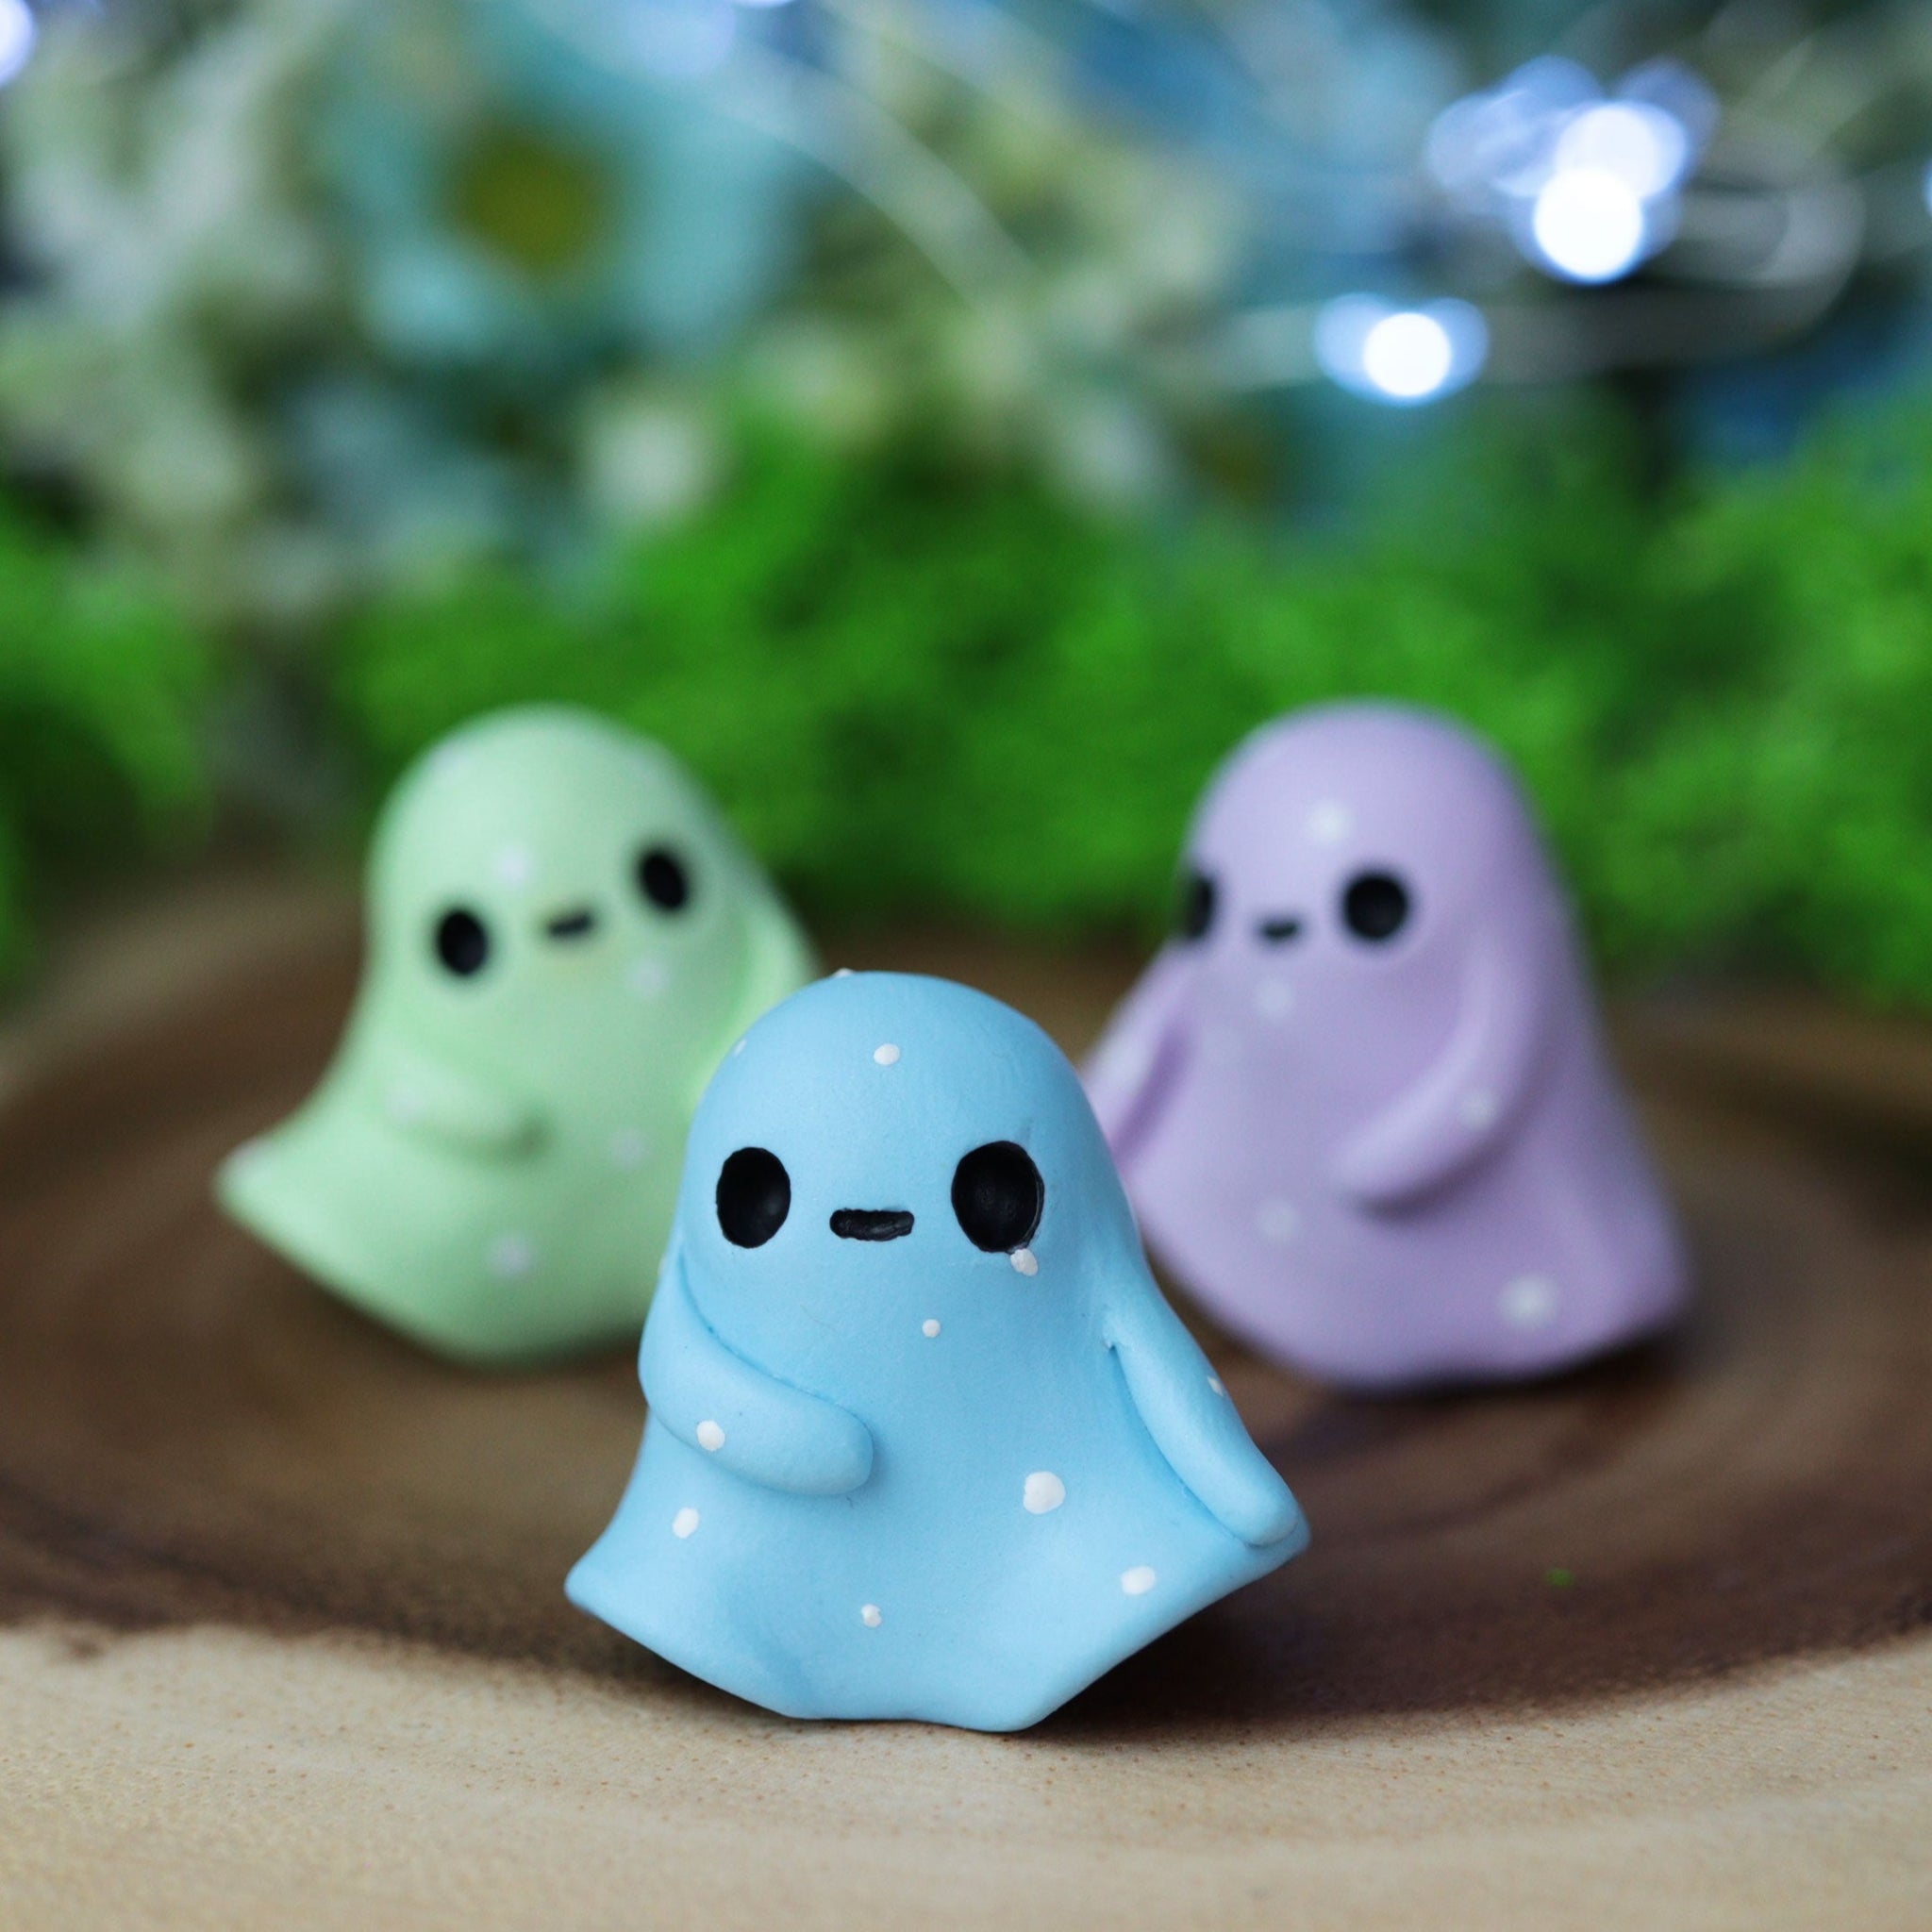 Pre-order Pastel Ghost Figurine